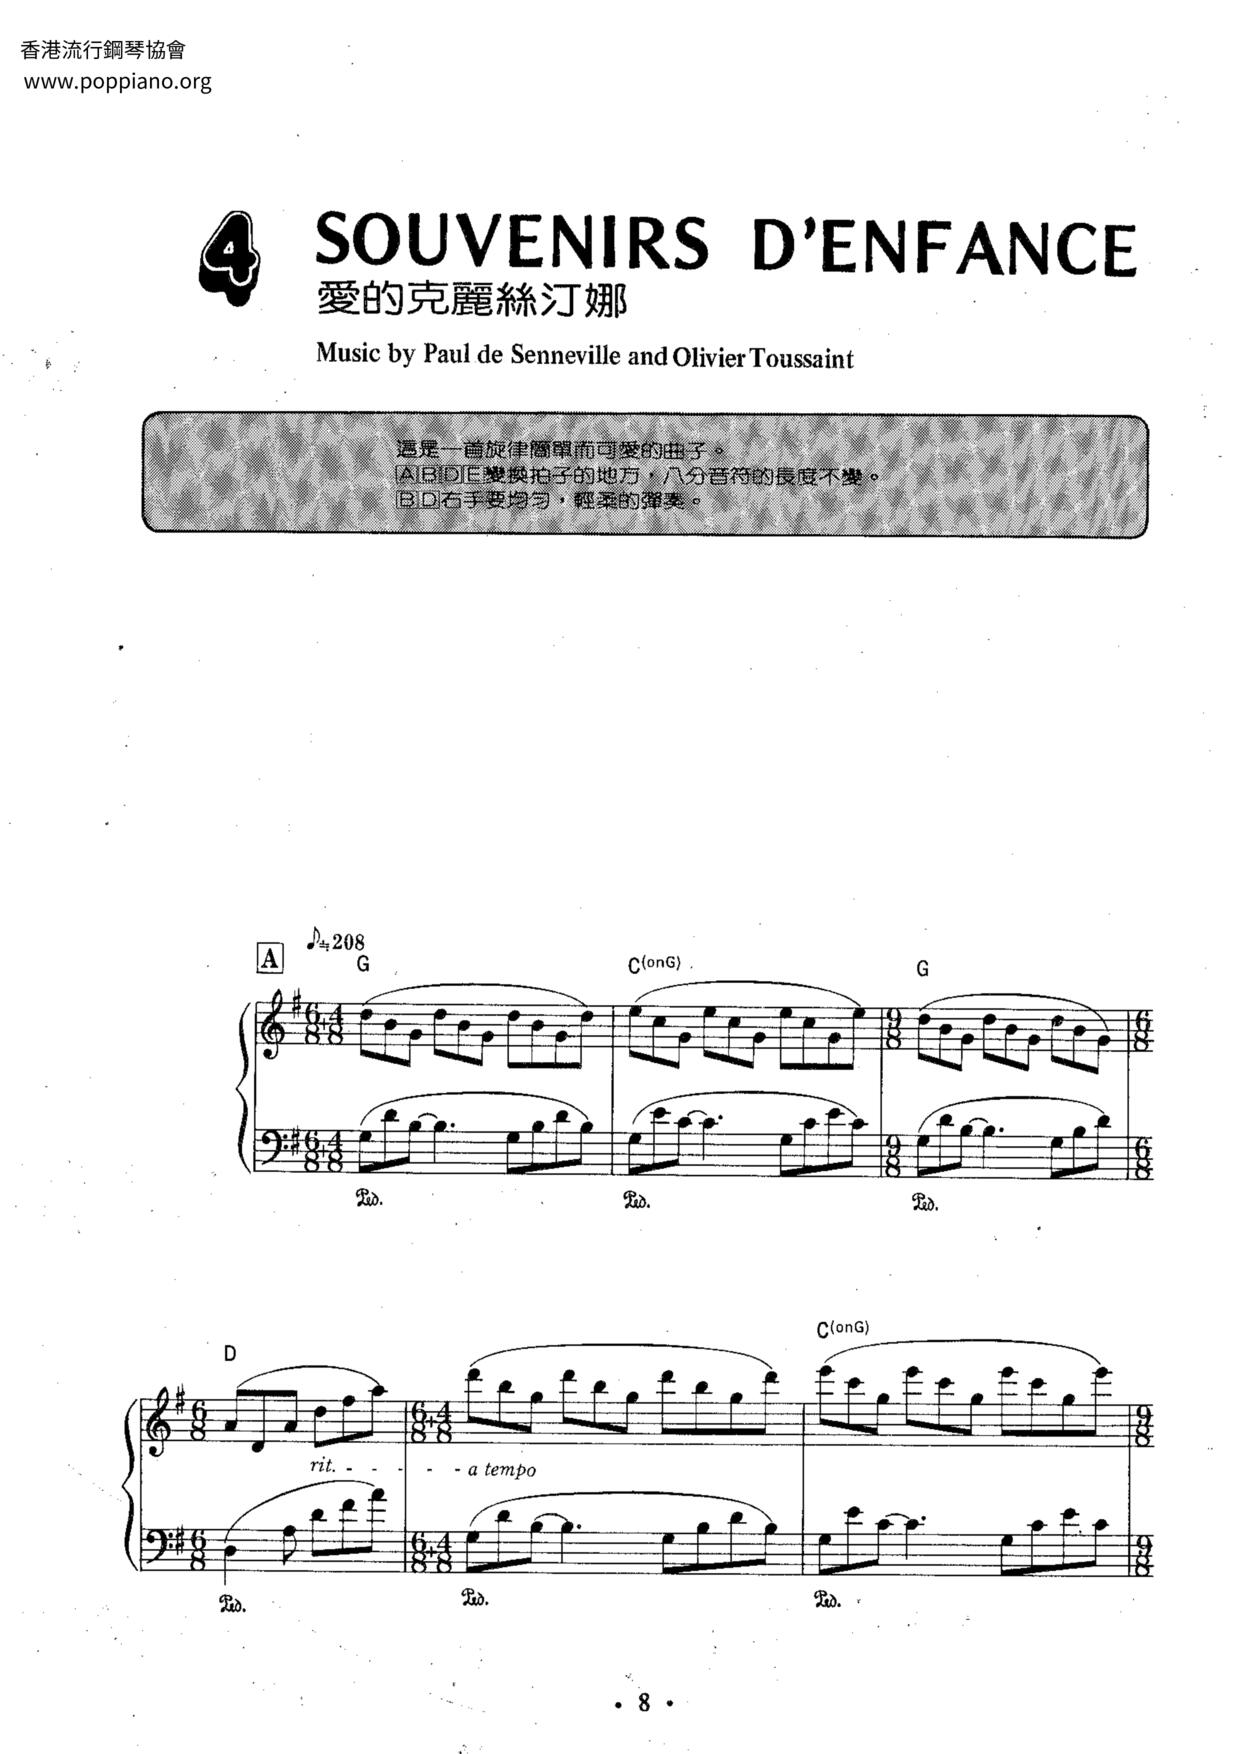 Souvenirs D'Enfance Score